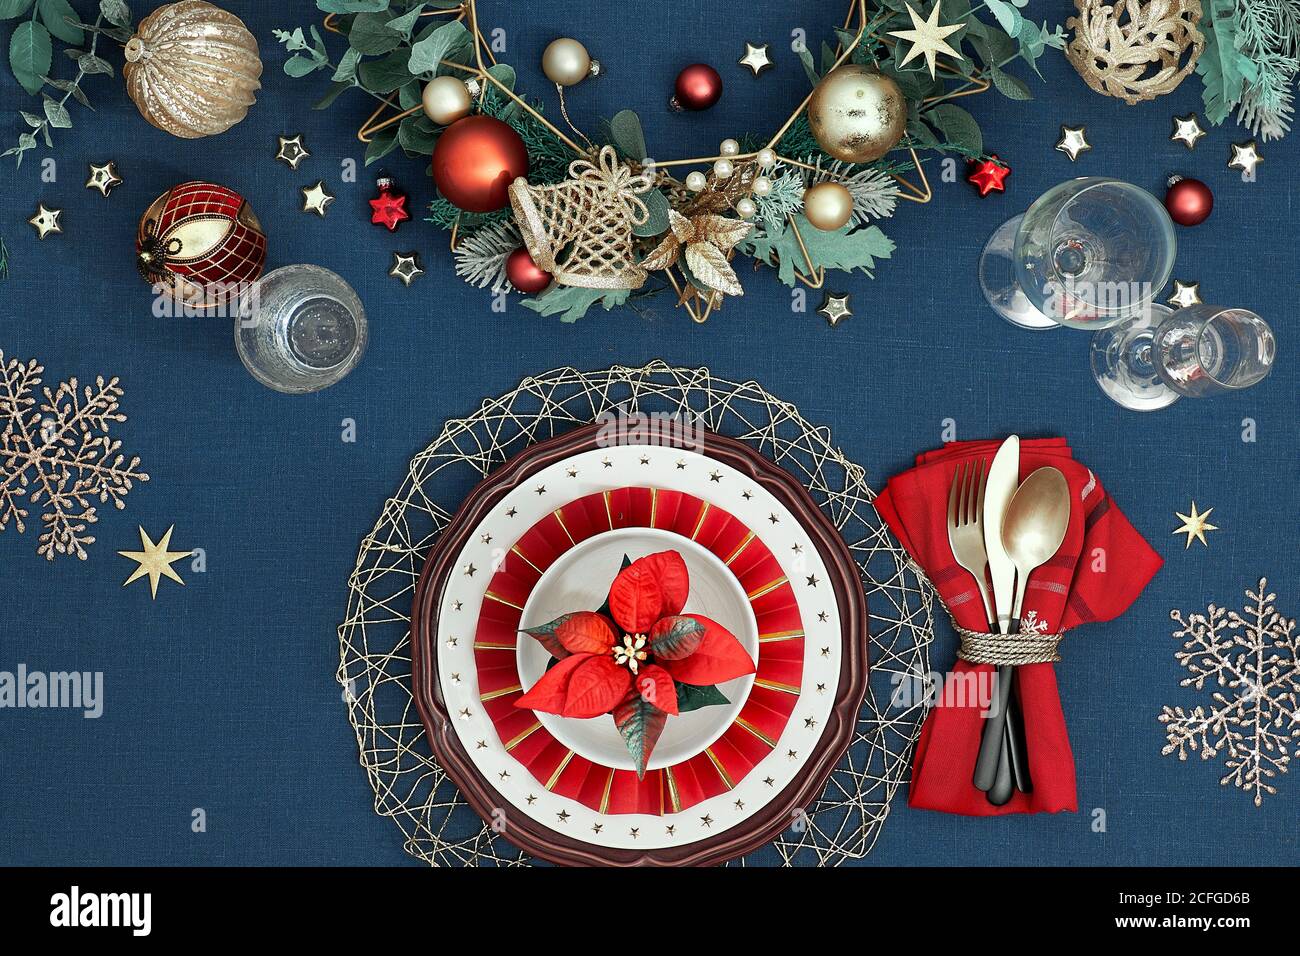 Tavolo natalizio con piatti bianchi, utensili dorati e decorazioni natalizie dorate di colore rosso scuro. Disposizione piatta, vista dall'alto su tovaglia di tessuto di lino blu. Foto Stock